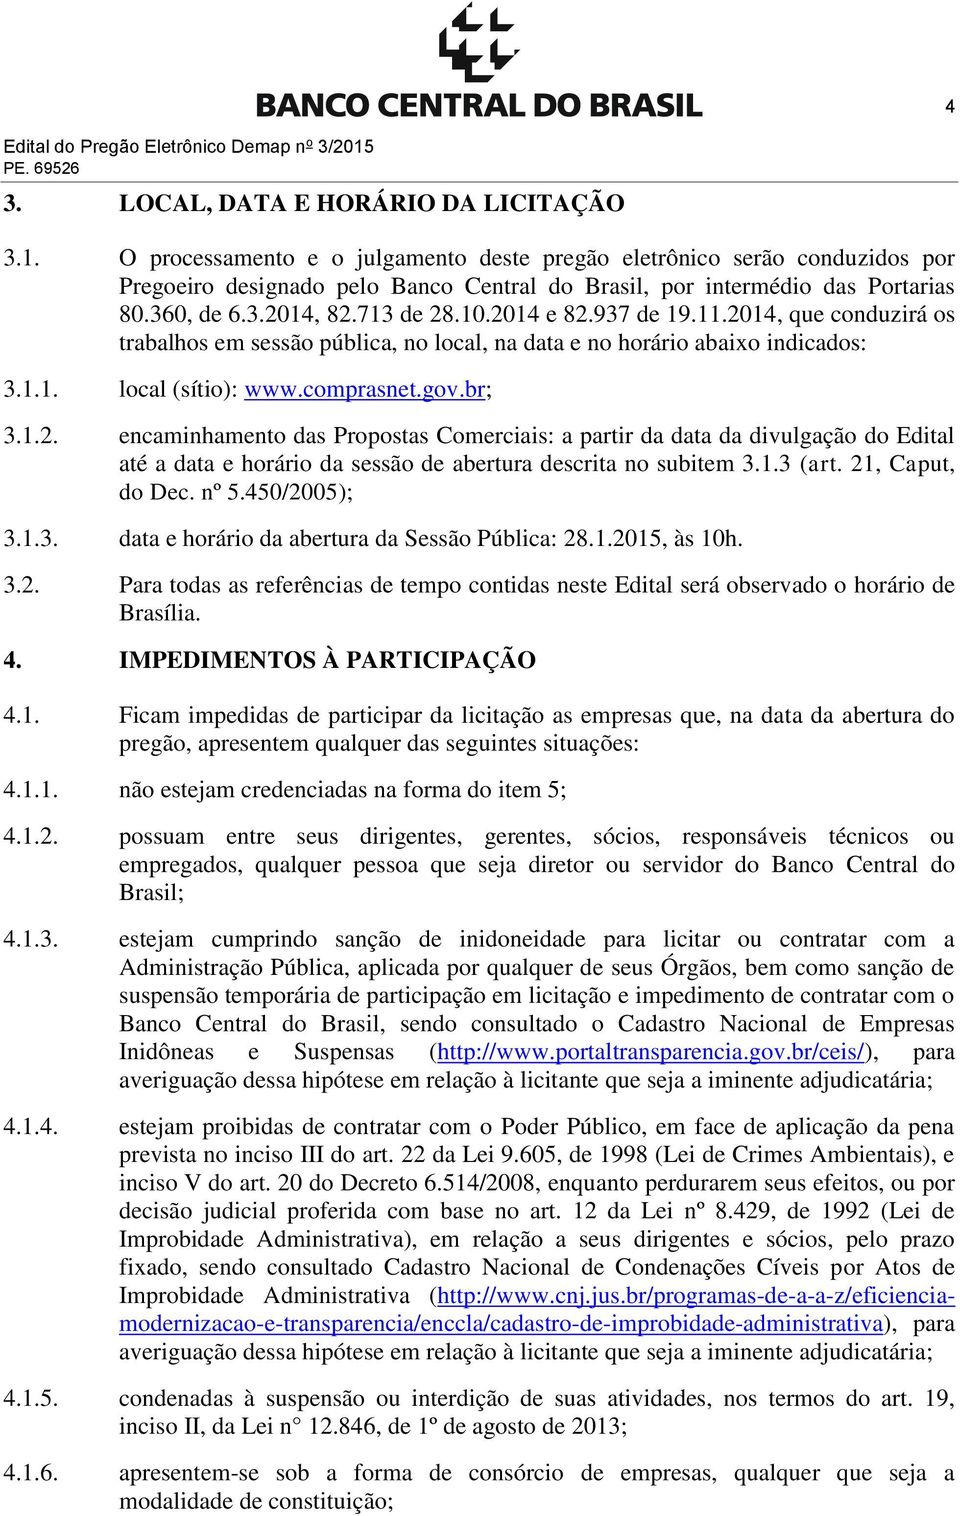 O processamento e o julgamento deste pregão eletrônico serão conduzidos por Pregoeiro designado pelo Banco Central do Brasil, por intermédio das Portarias 80.360, de 6.3.2014, 82.713 de 28.10.